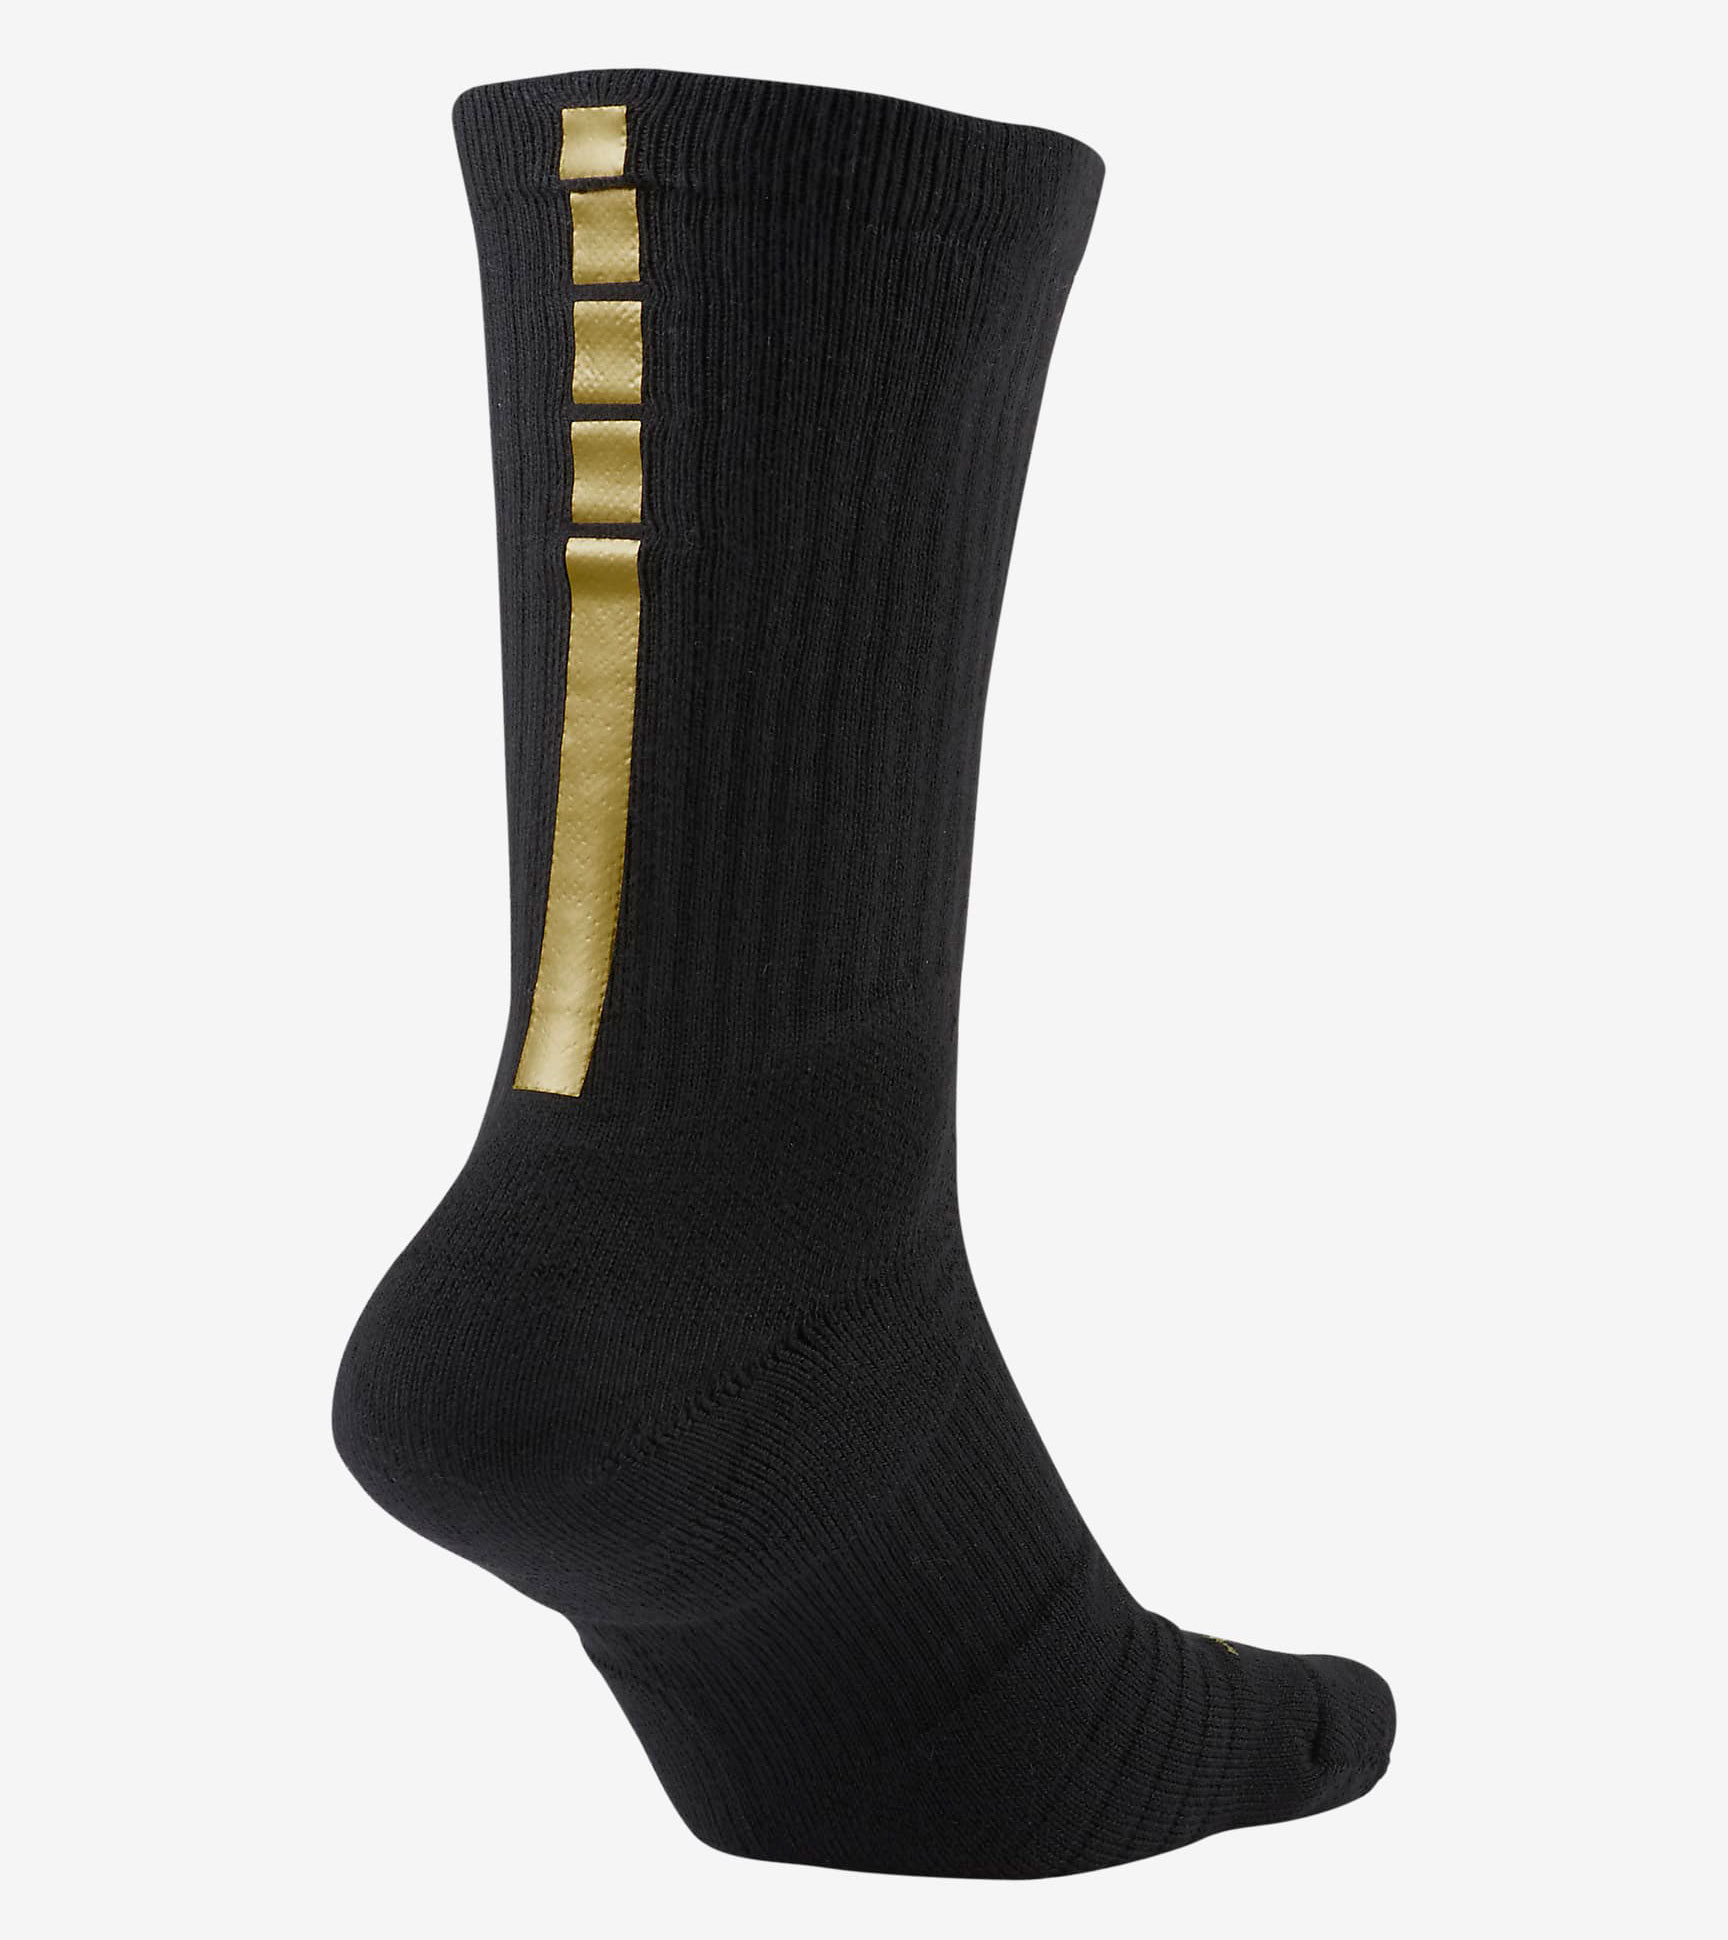 nike-elite-crew-basketball-socks-black-gold-2